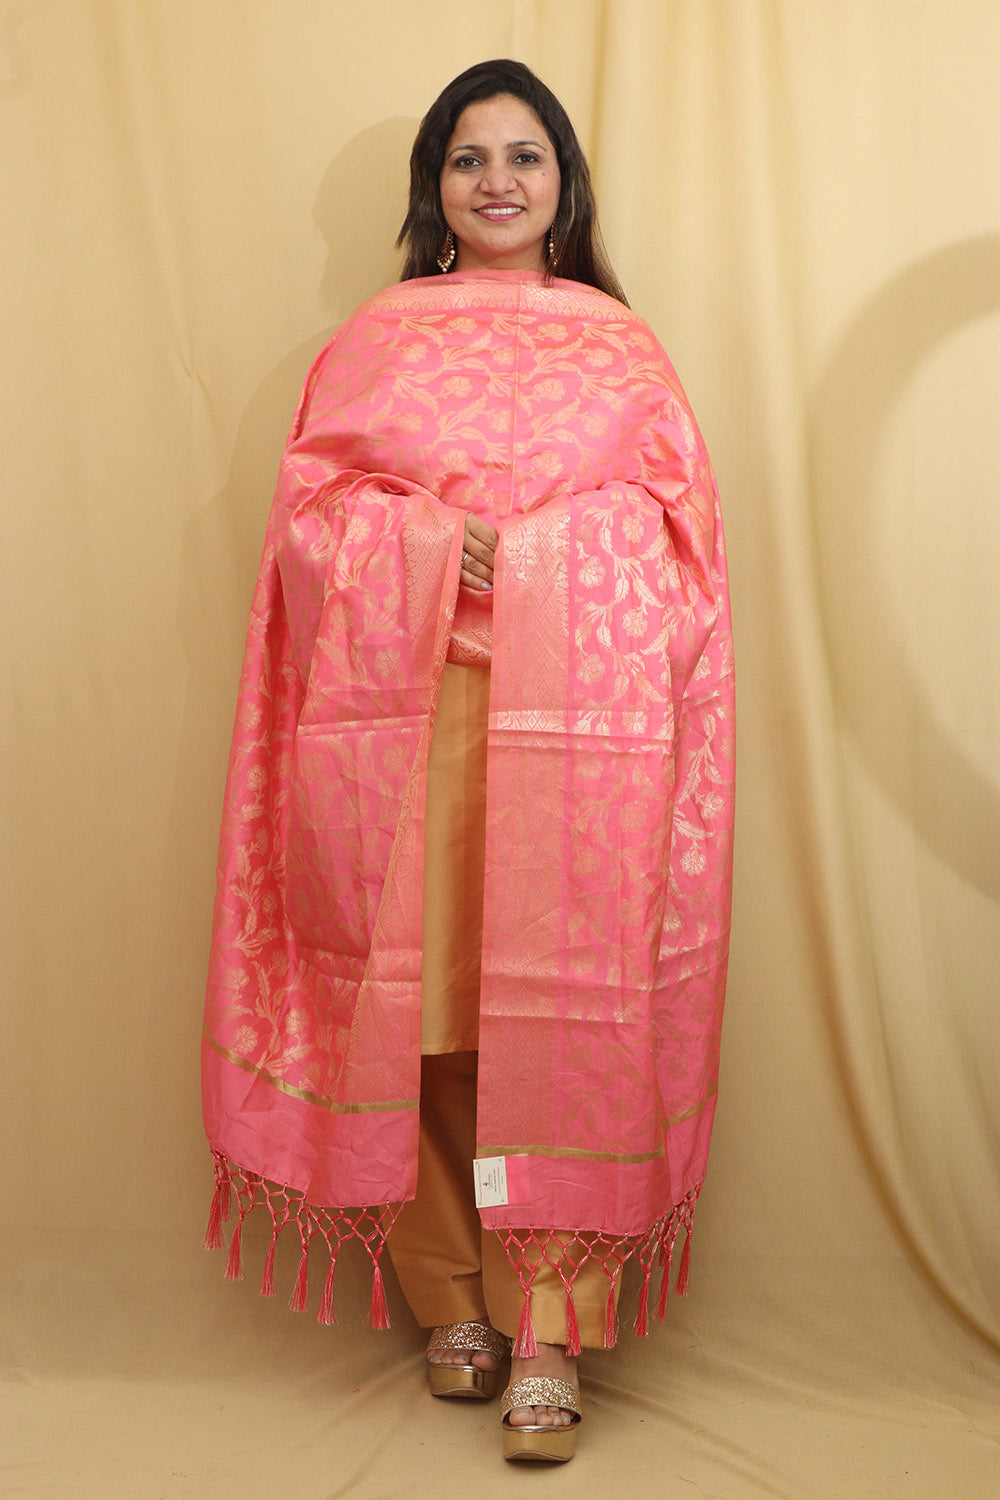 Exquisite Pink Banarasi Silk Dupatta - Opulent Elegance - Luxurion World